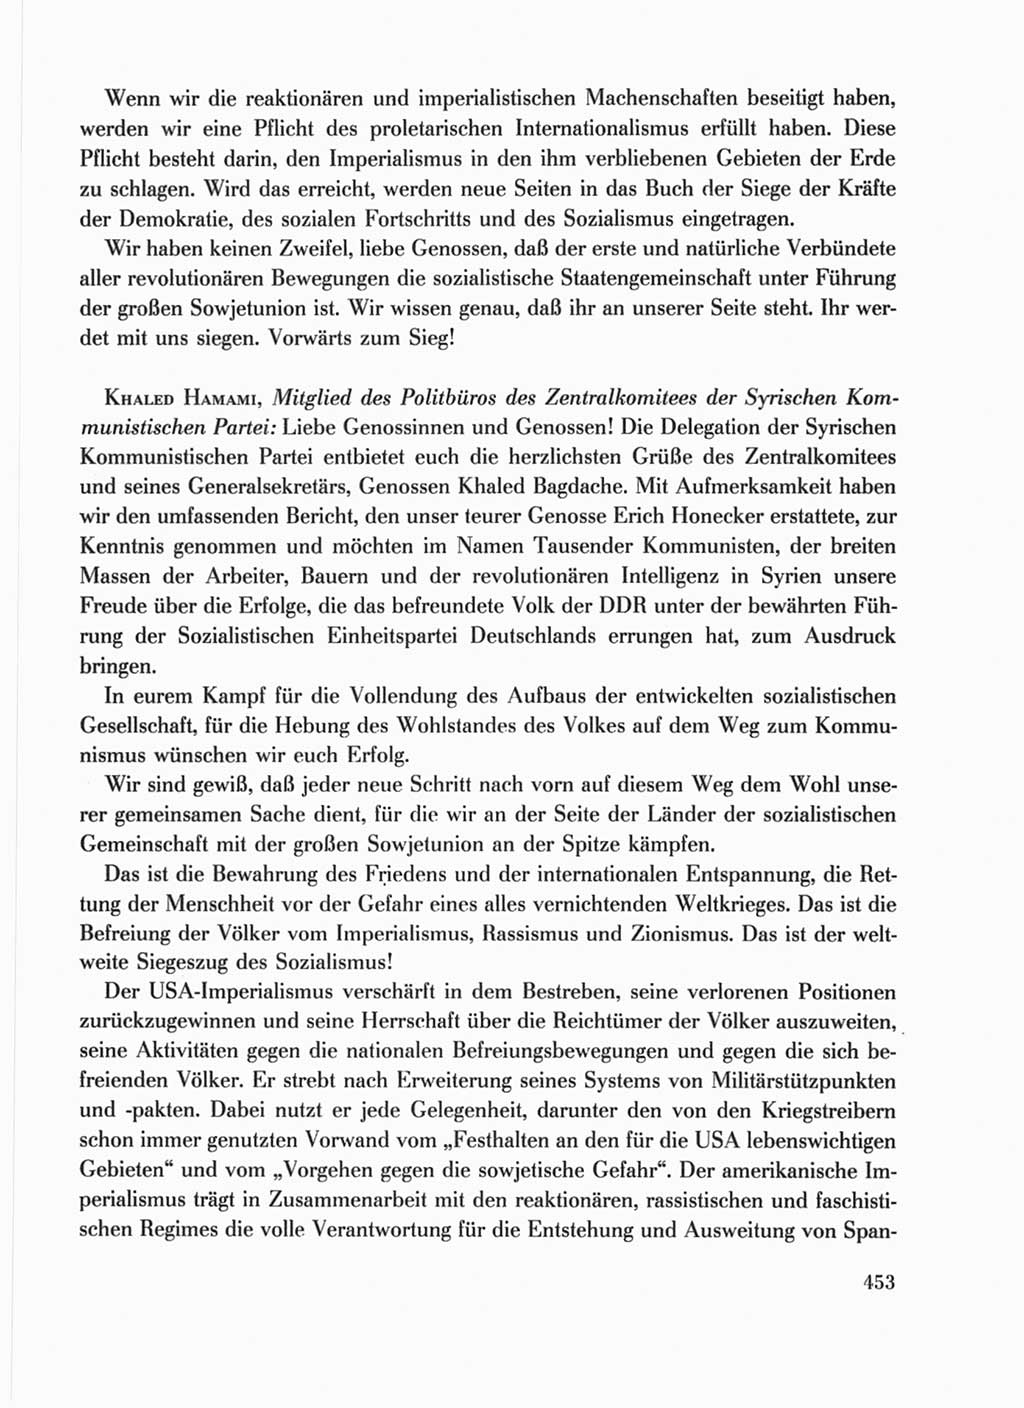 Protokoll der Verhandlungen des Ⅹ. Parteitages der Sozialistischen Einheitspartei Deutschlands (SED) [Deutsche Demokratische Republik (DDR)] 1981, Band 1, Seite 453 (Prot. Verh. Ⅹ. PT SED DDR 1981, Bd. 1, S. 453)